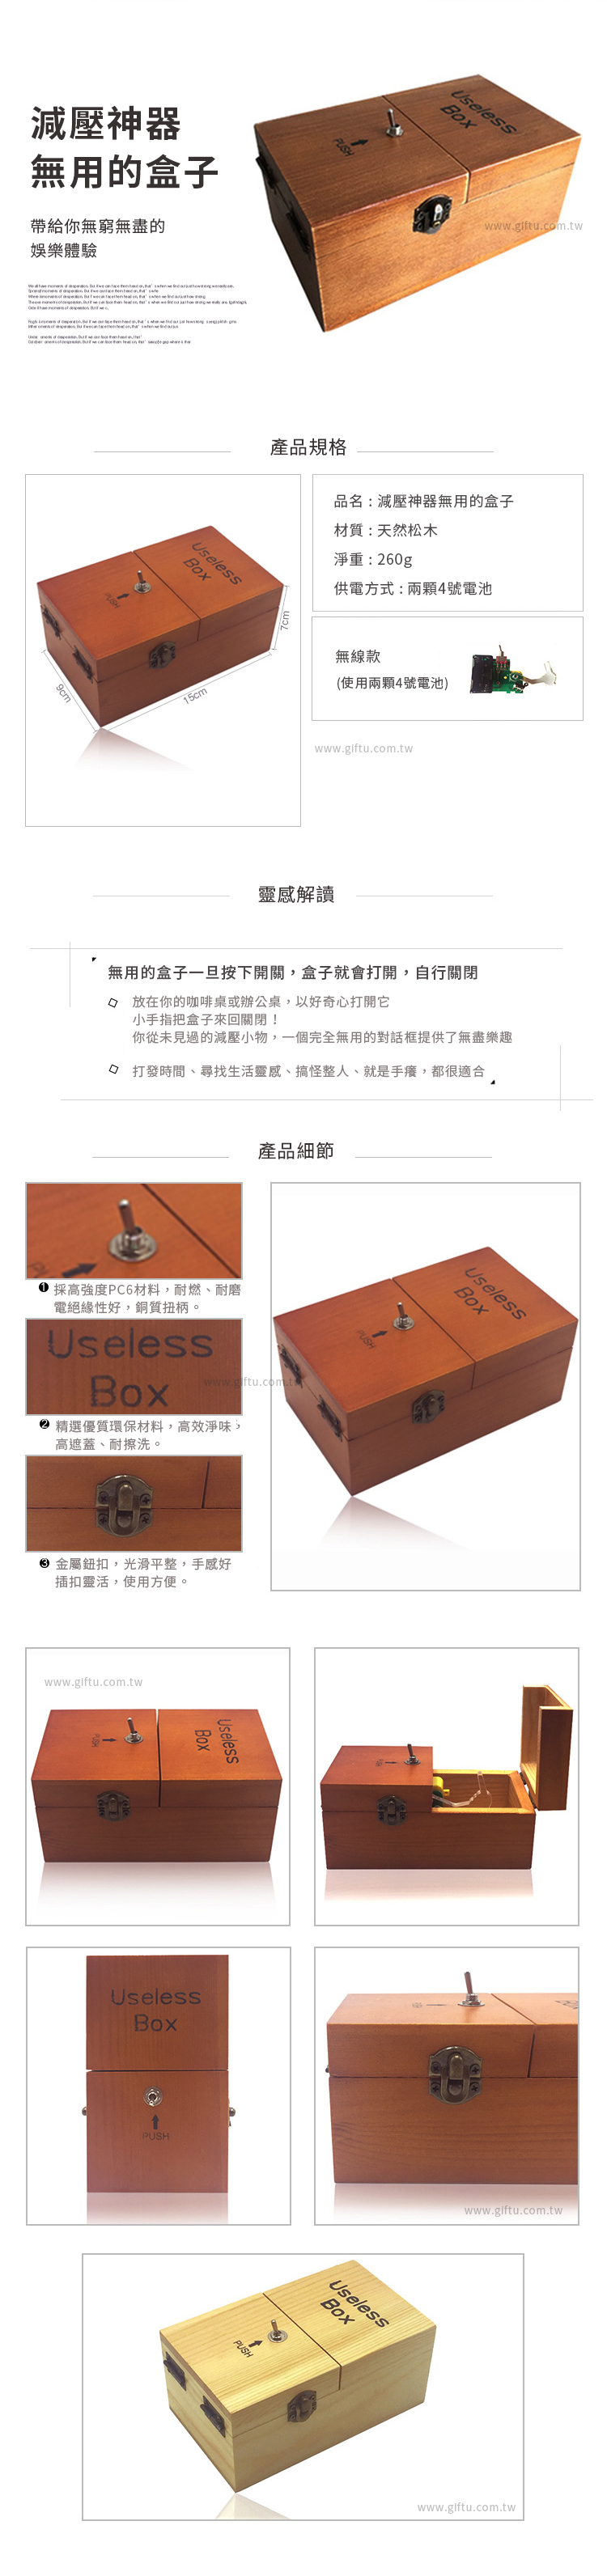 【3/29~5/31畢業季早鳥88折優惠】創意小物館 減壓神器無用的盒子 Useless Box 粉色